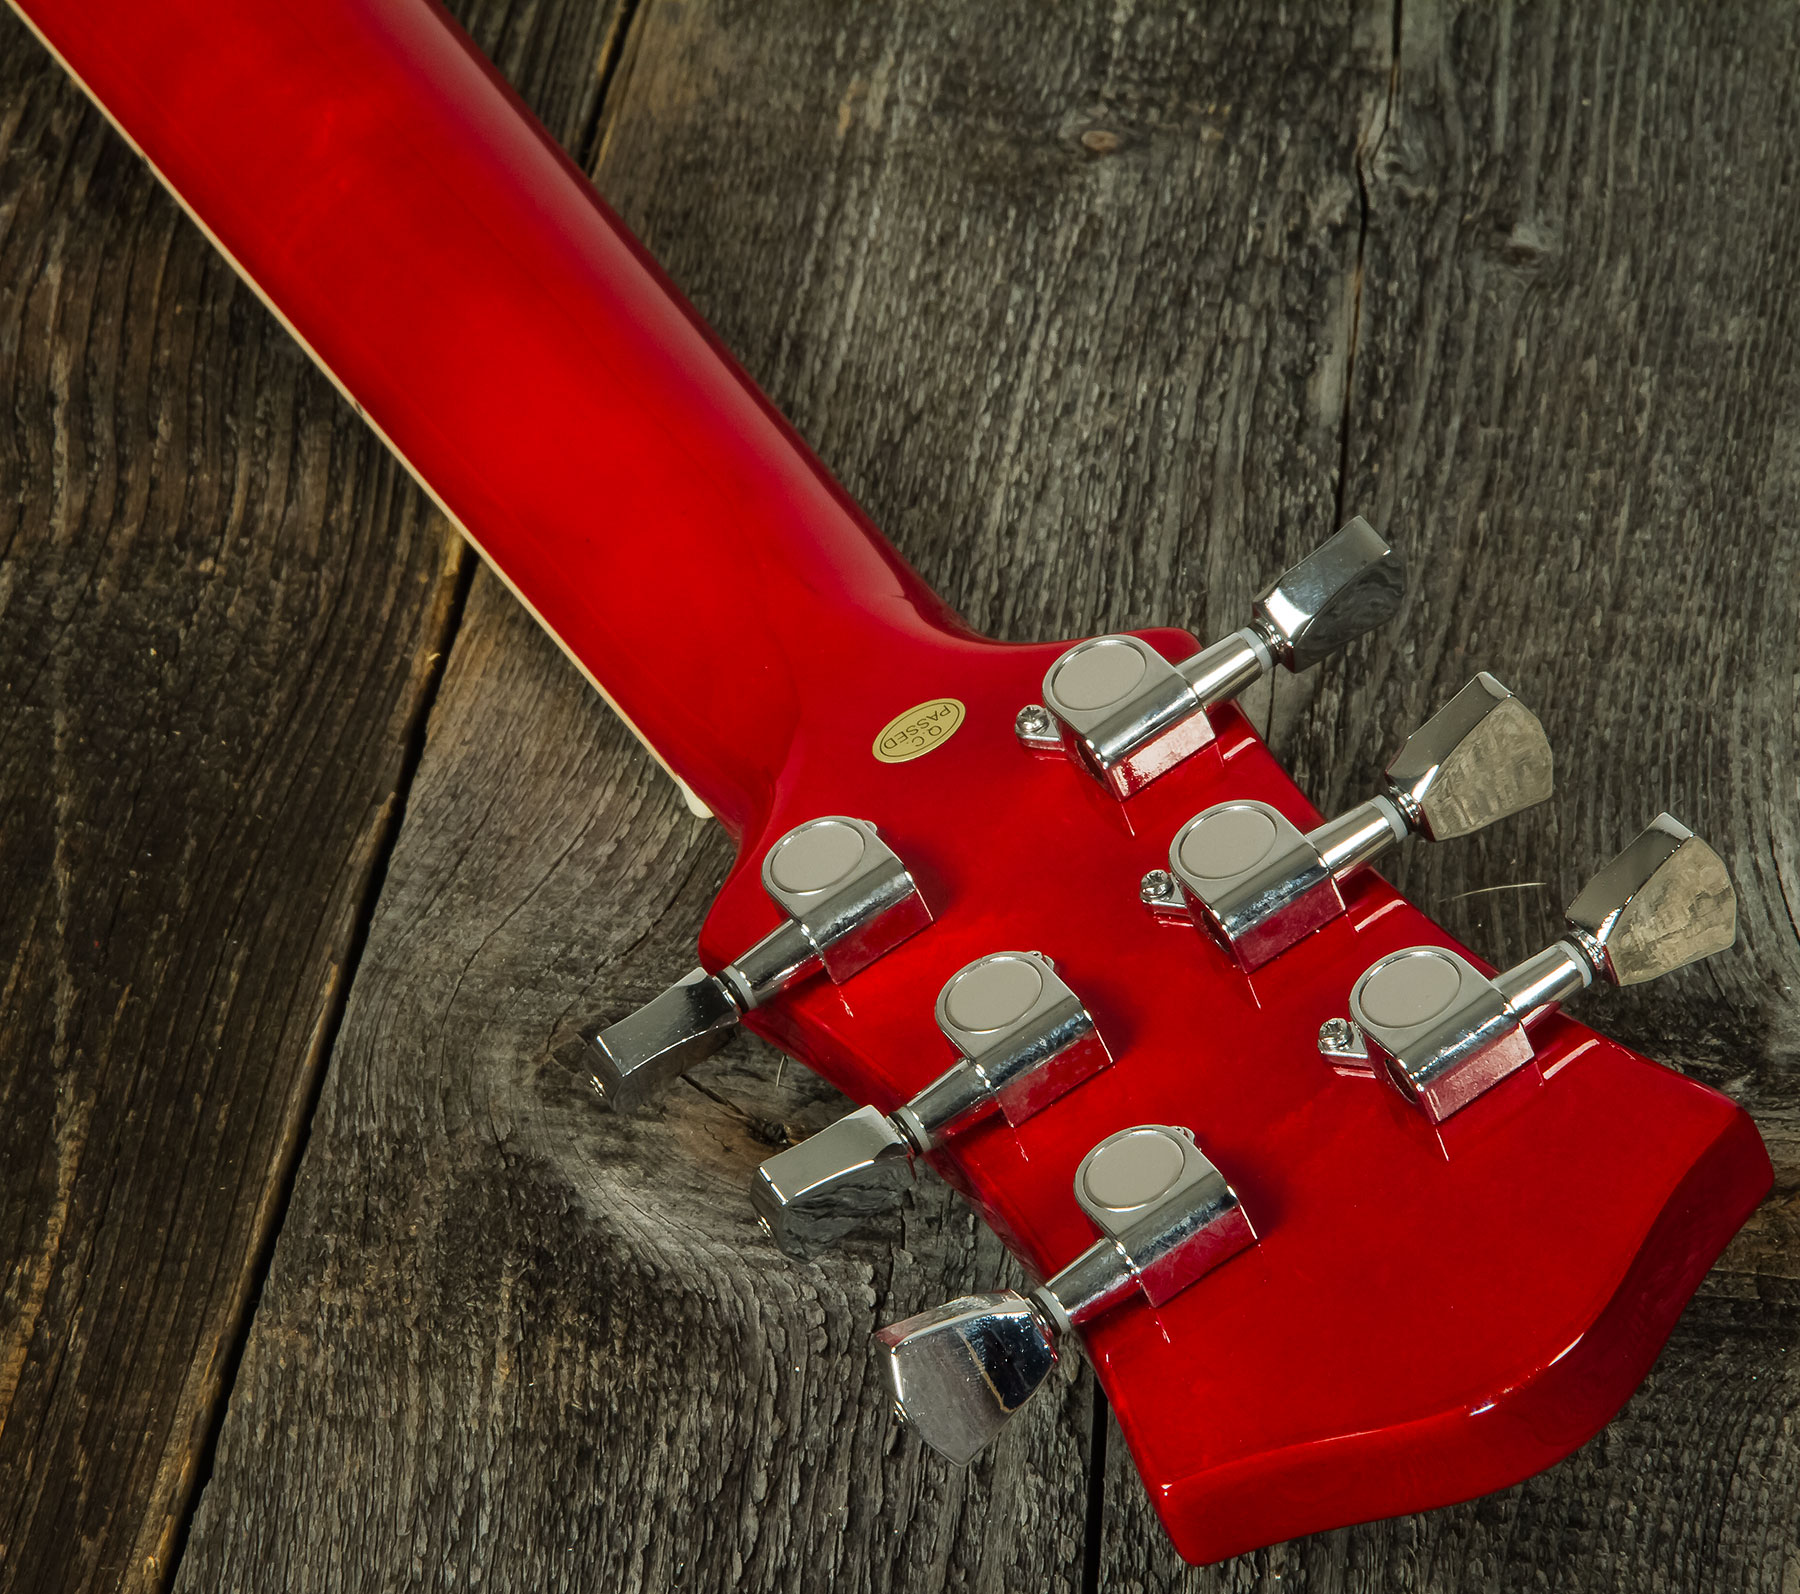 Eastone Sdc70 Hh Ht Pur - Red - Guitarra eléctrica de doble corte. - Variation 5